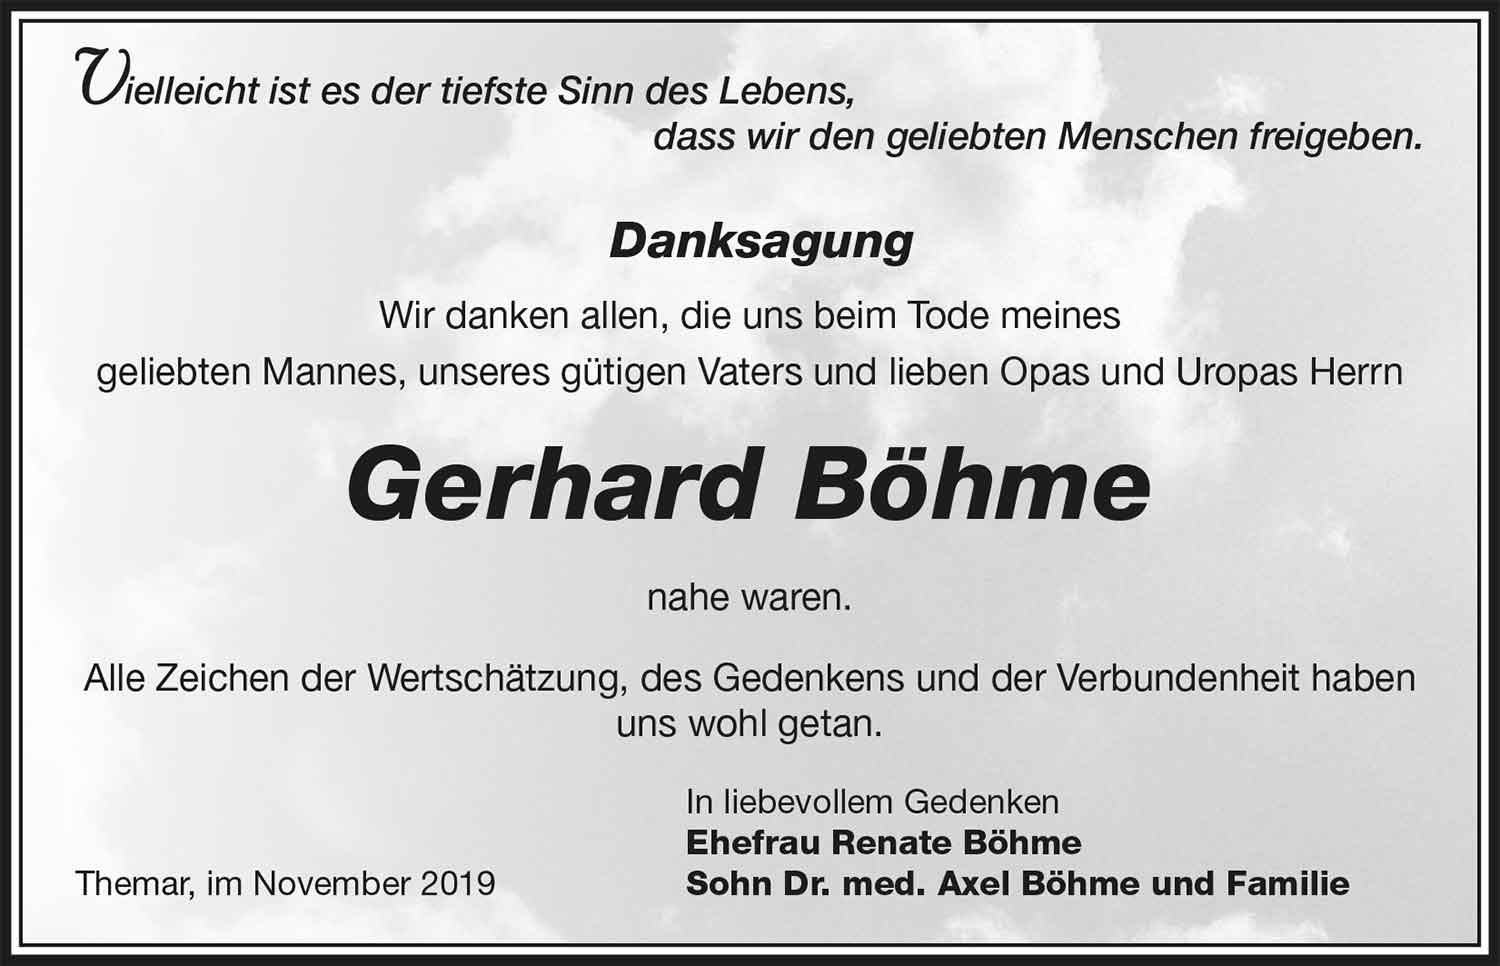 Danksagung_Gerhard_Boehme_48_19